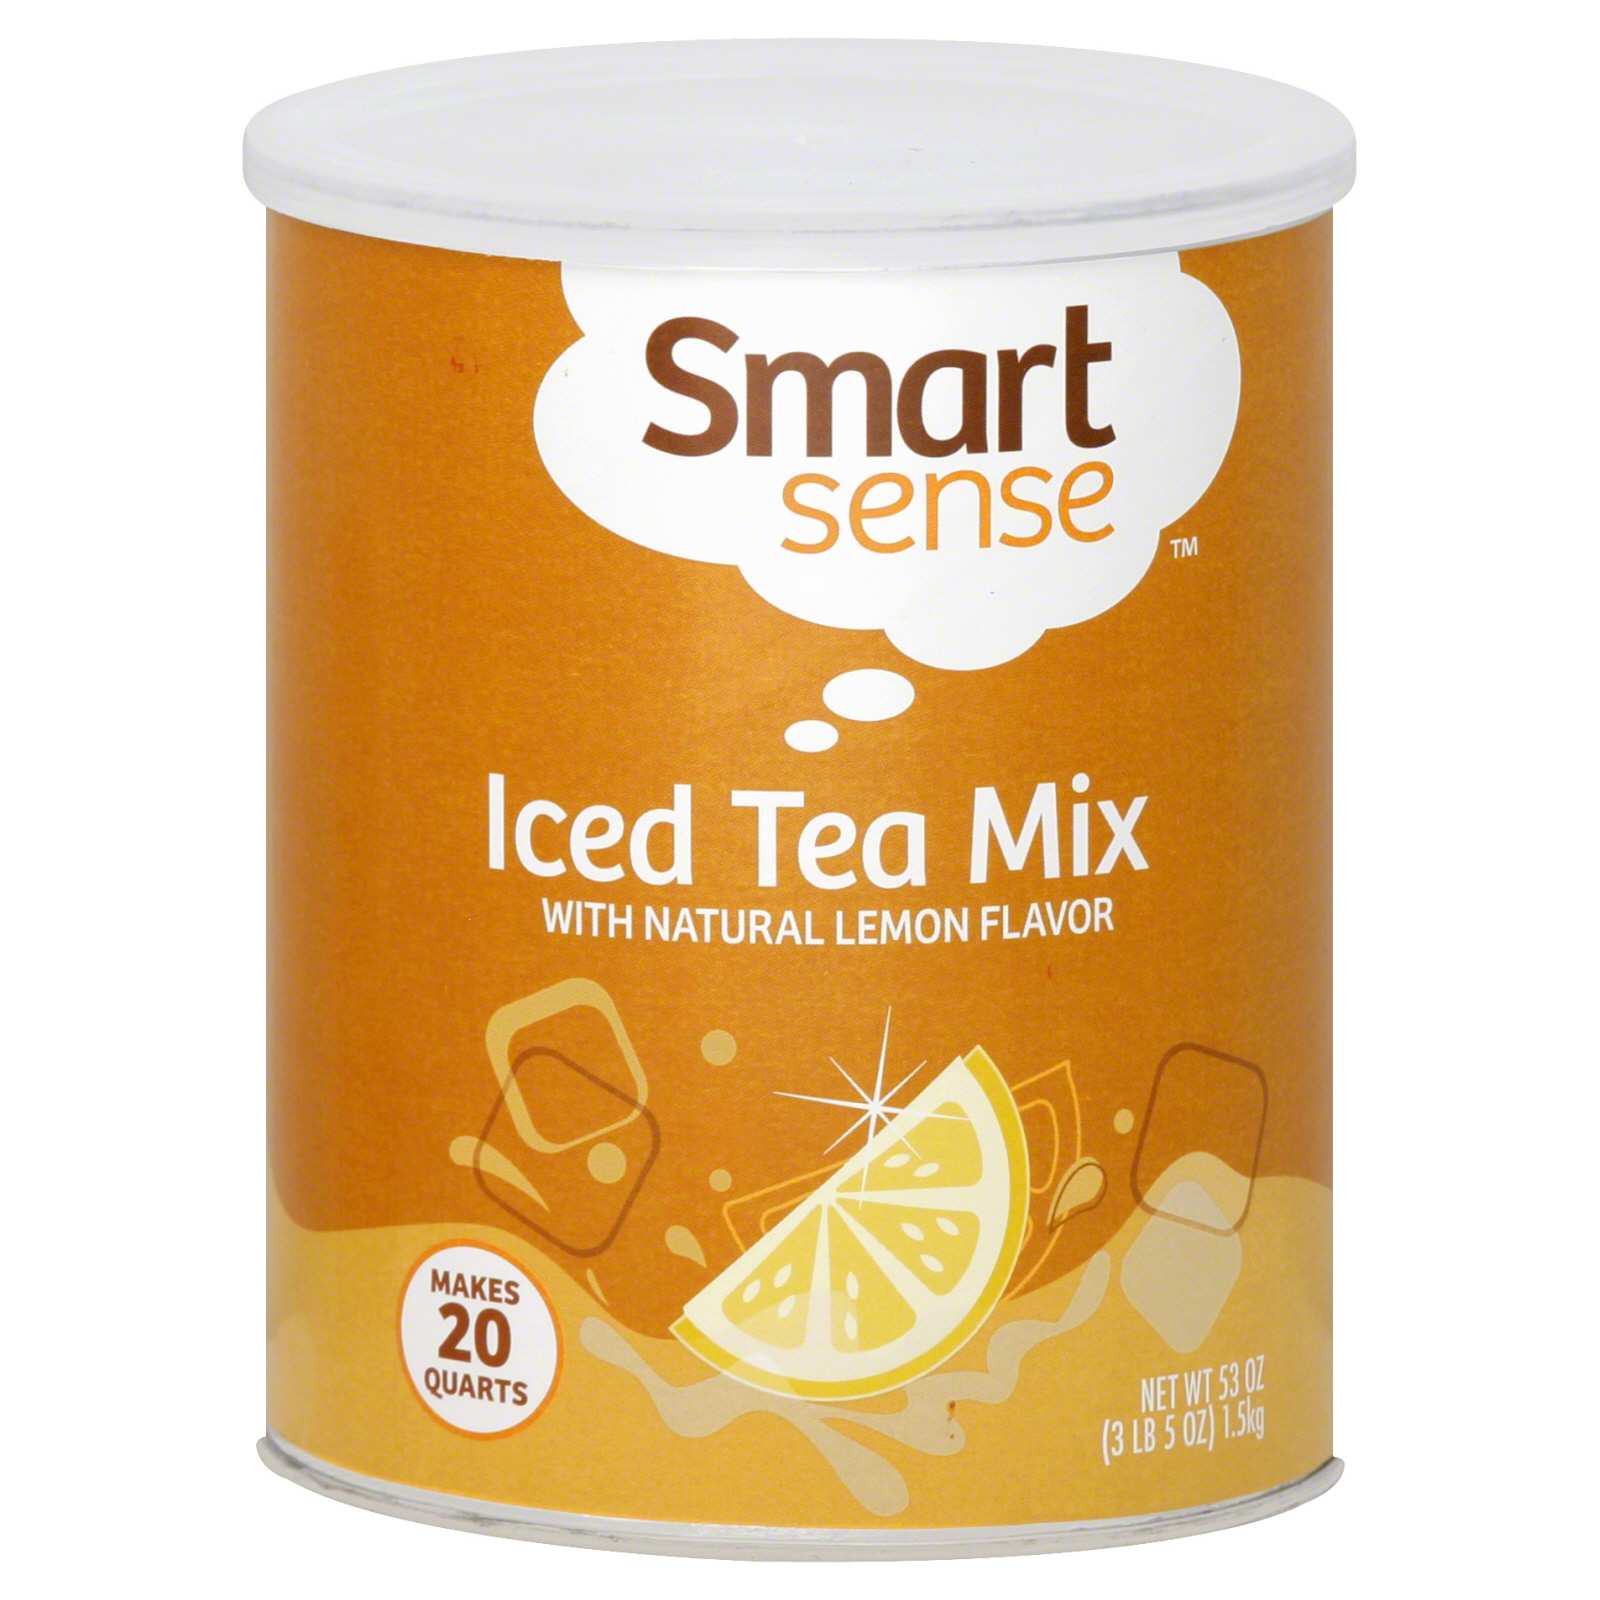 Smart Sense Iced Tea Mix, with Natural Lemon Flavor 53 oz (3 lb 5 oz) 1.5 kg